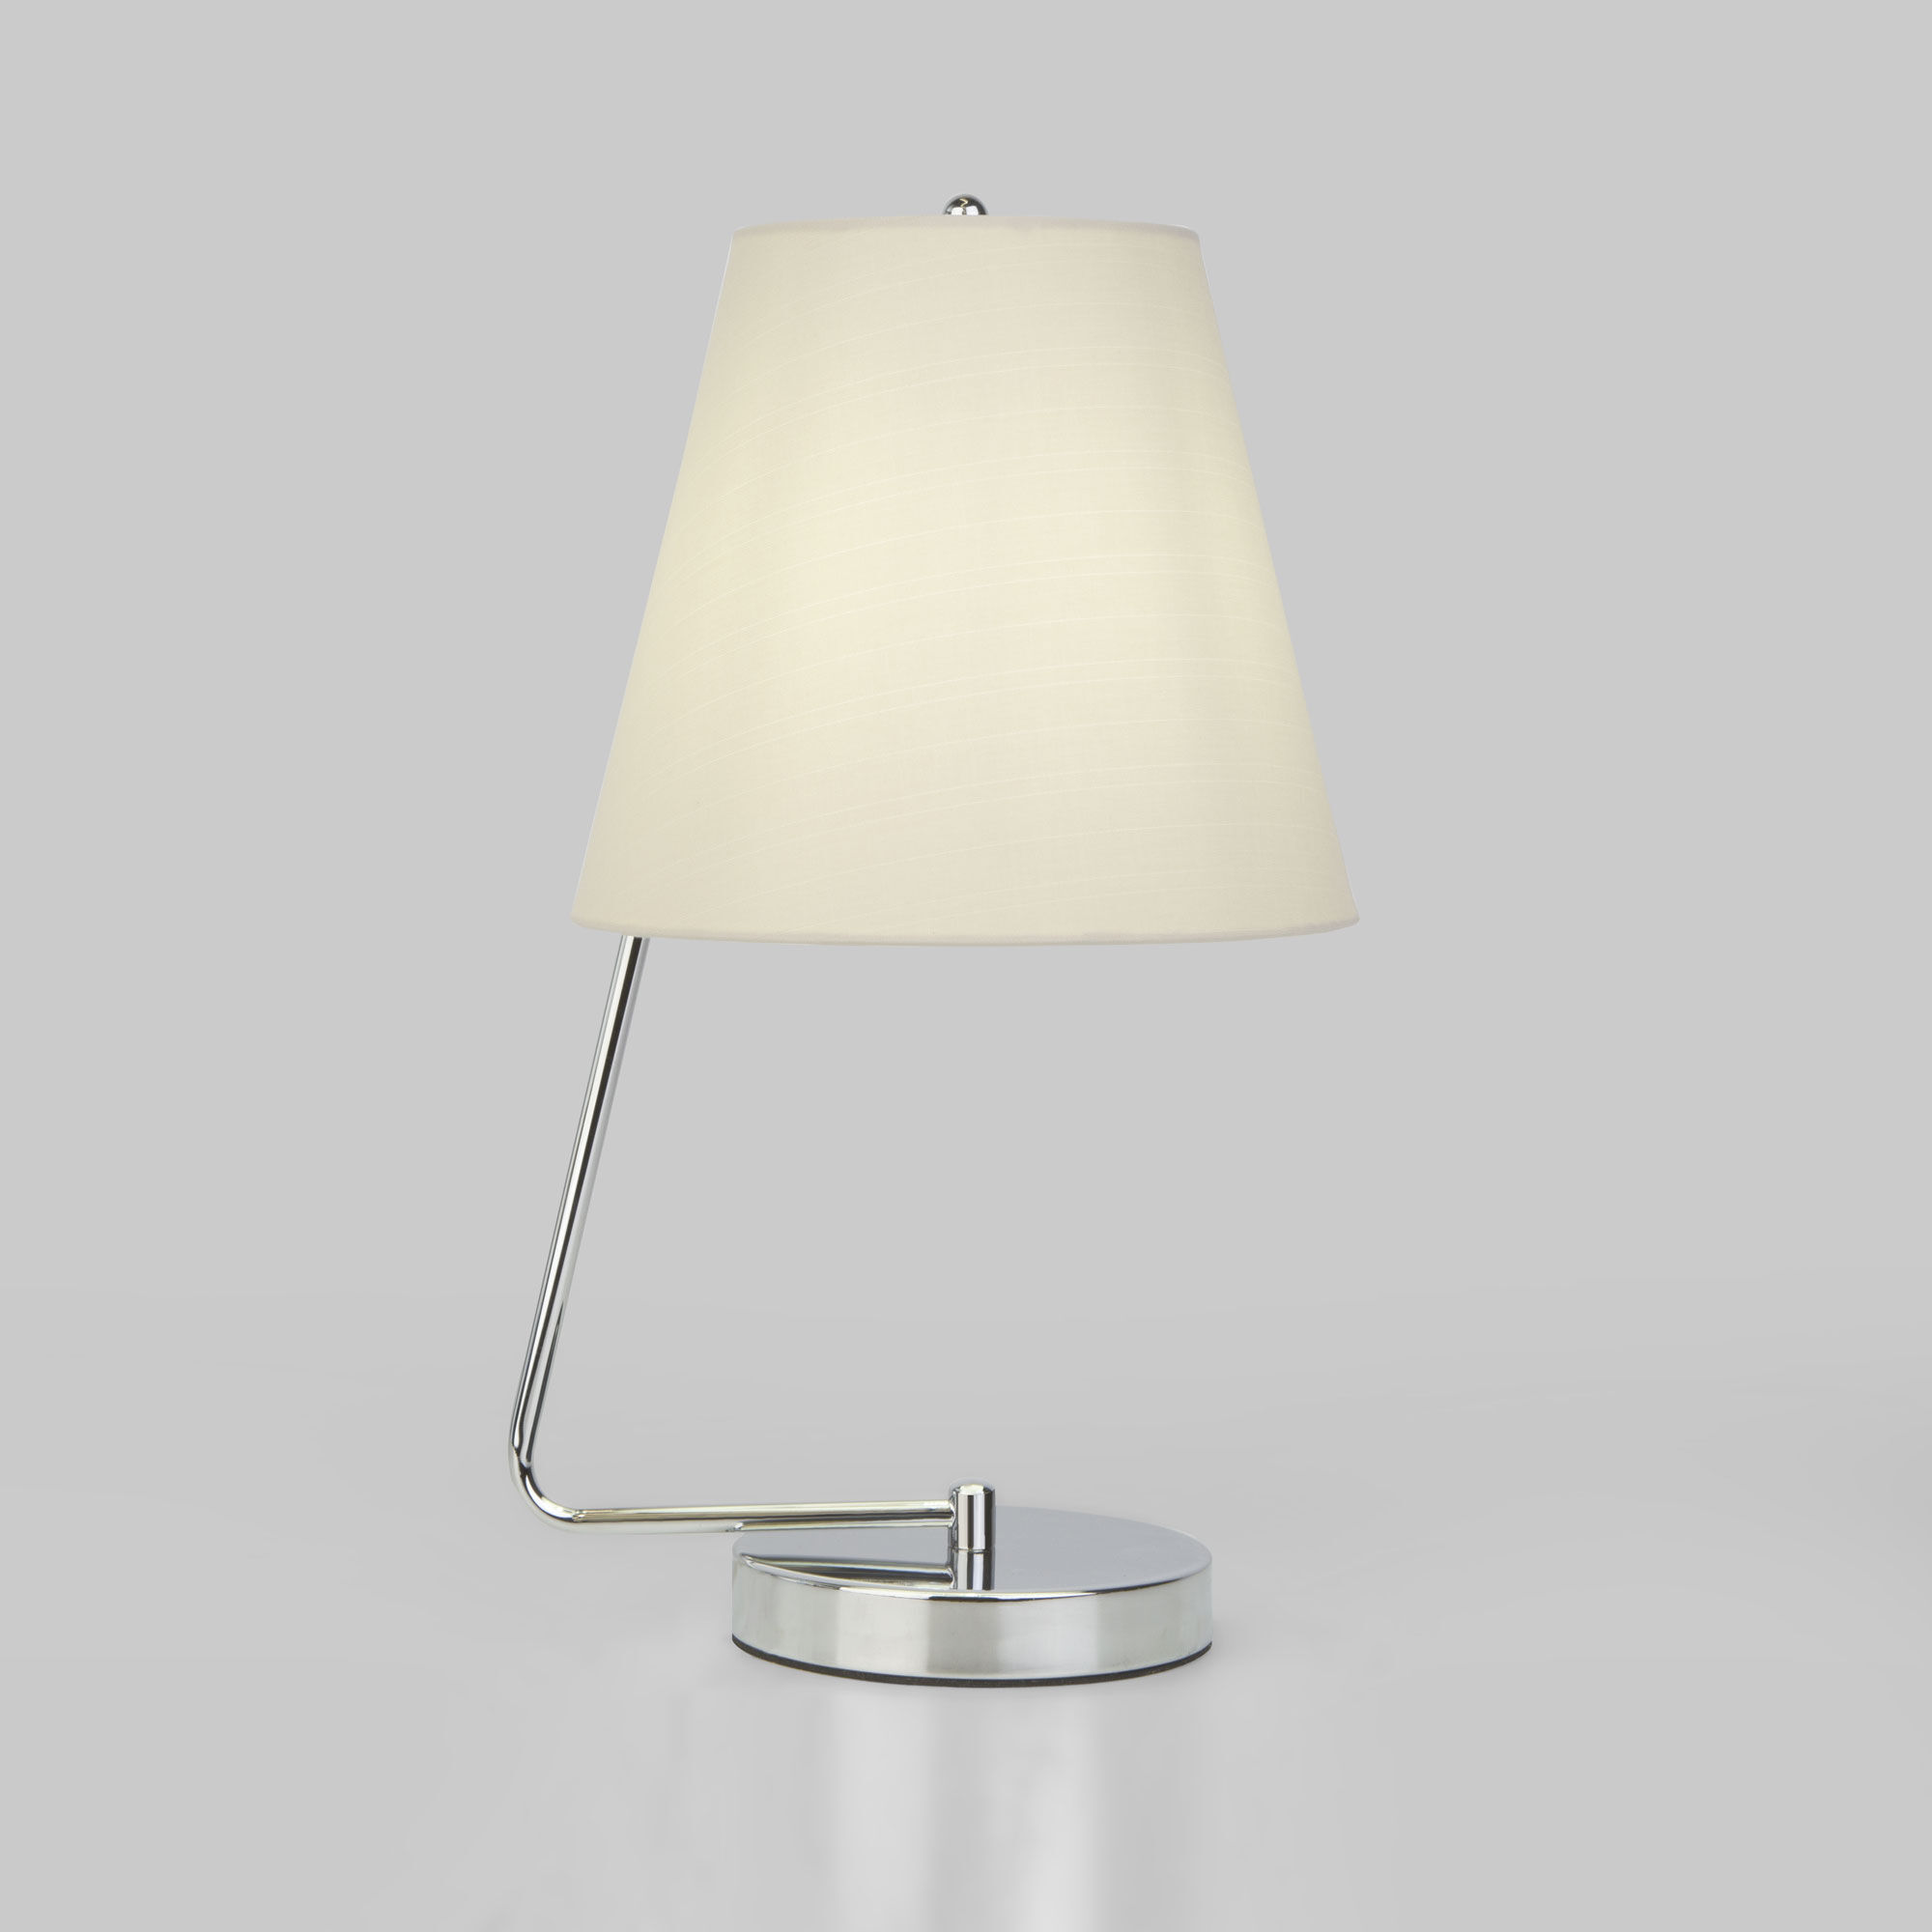 Настольная лампа 43 см, Eurosvet 01165/1, хром